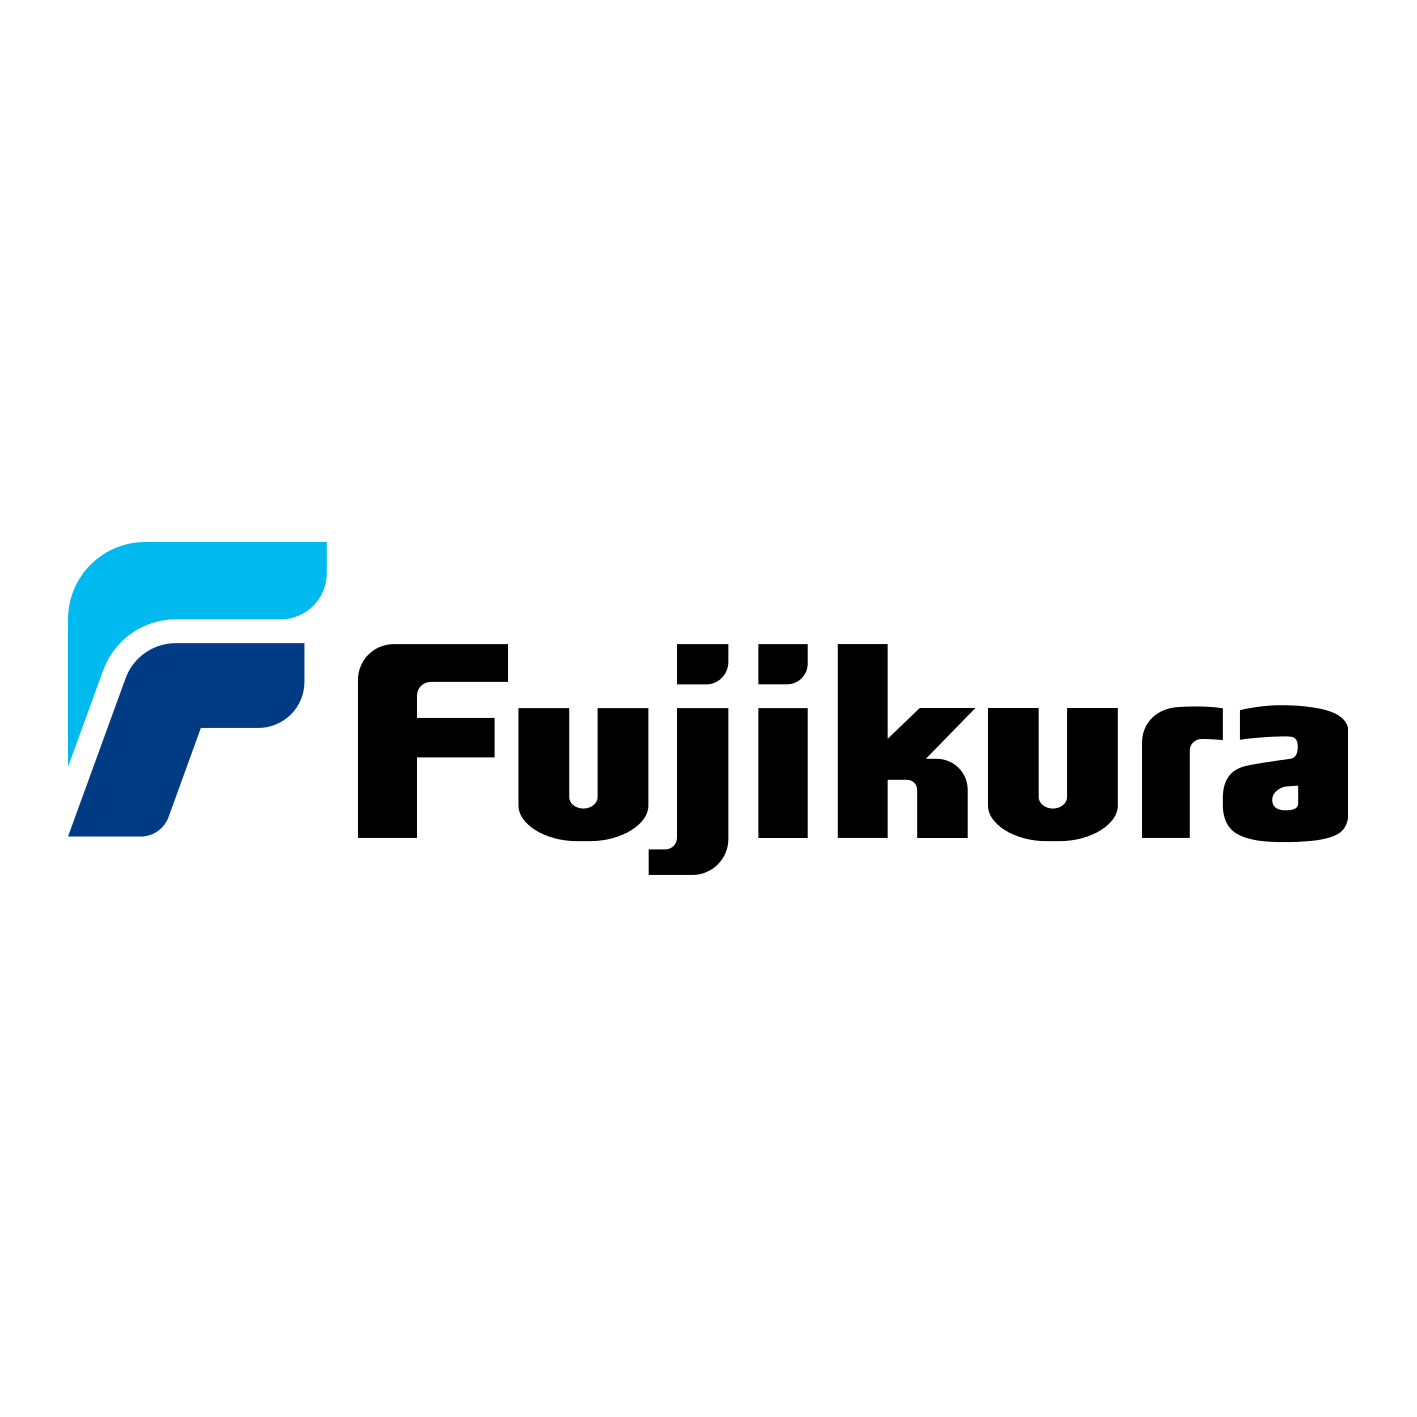 ลูกค้า: Fujikura